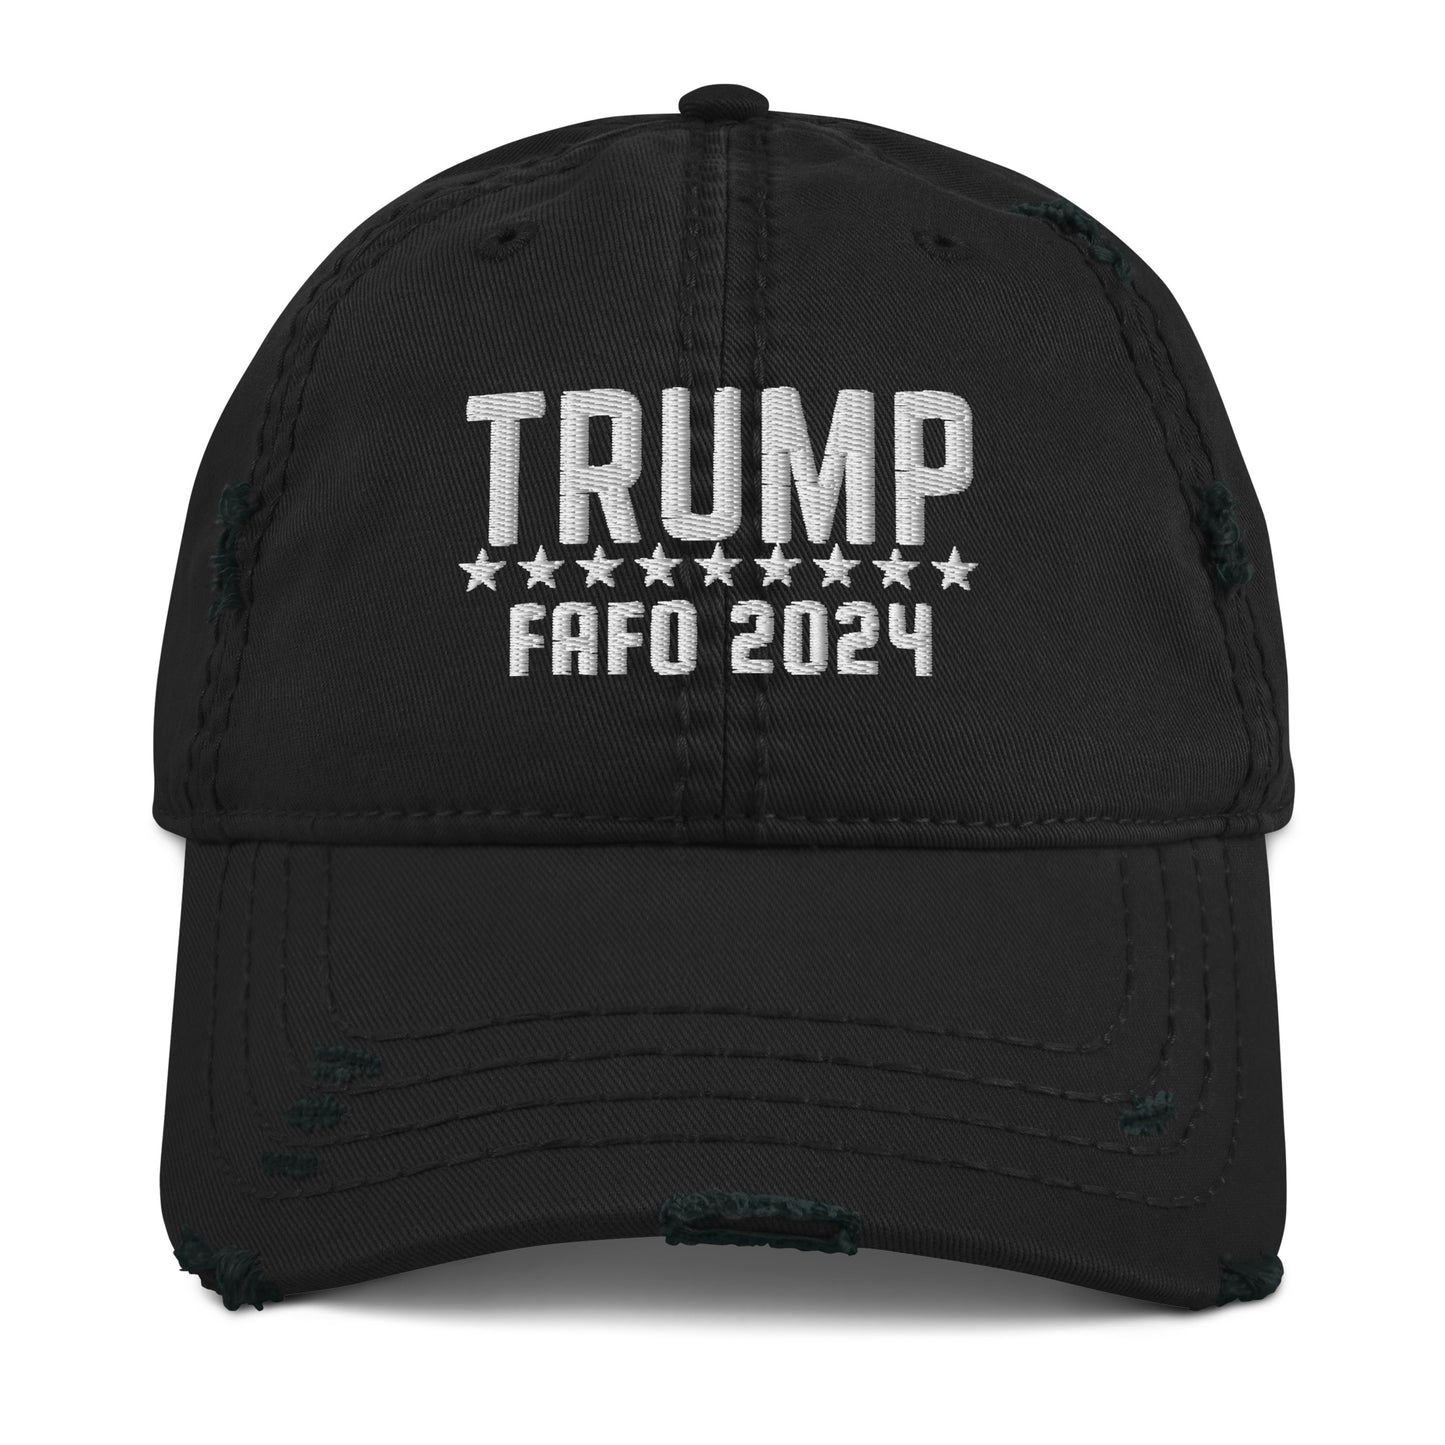 “TRUMP FAFO 2024” Distressed Hat